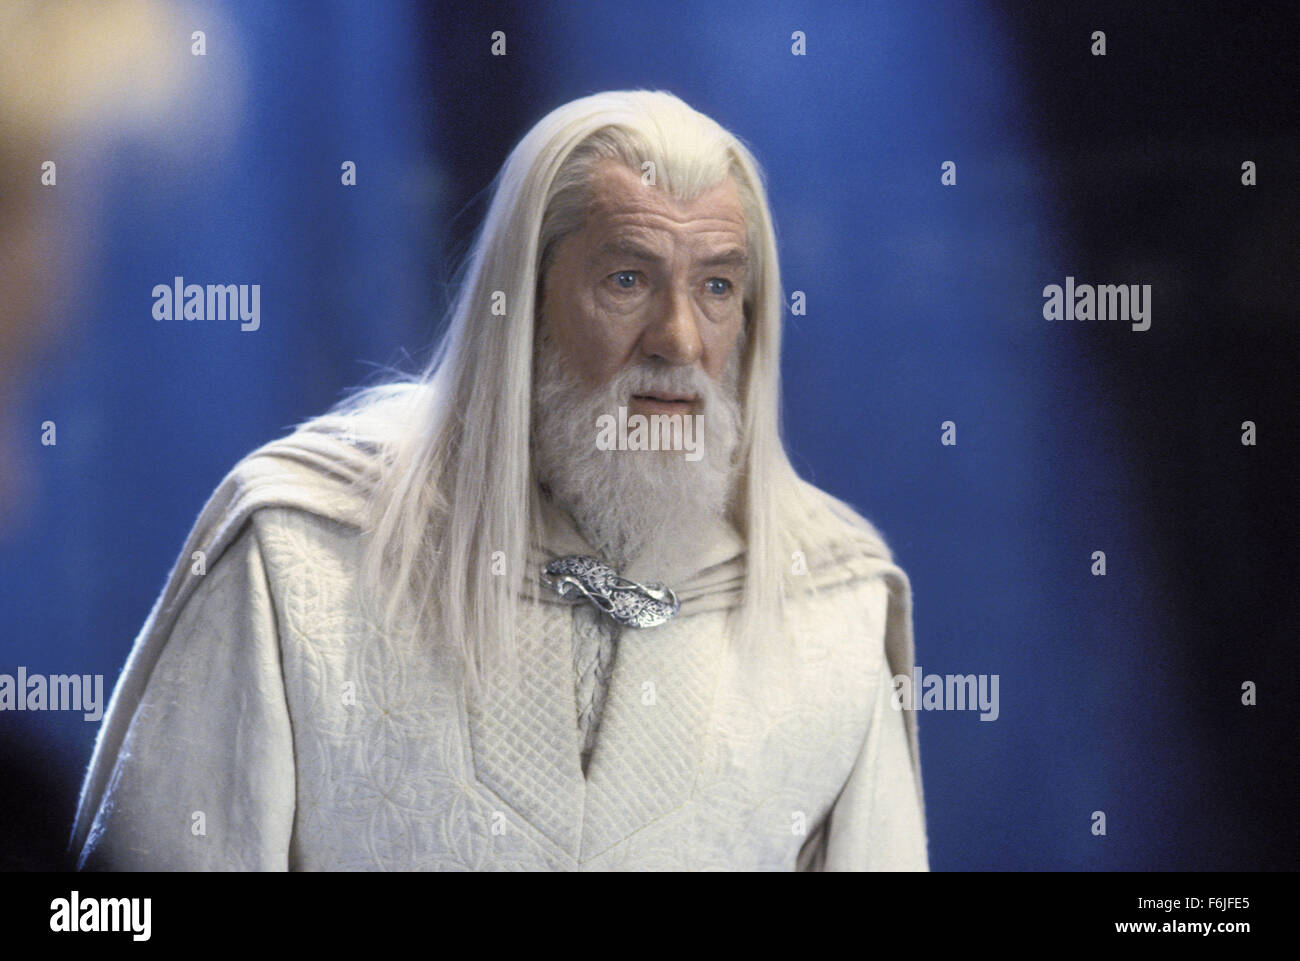 4. Dezember 2003; Hollywood, Kalifornien, USA; Schauspieler IAN MCKELLEN, die Sterne als Gandalf in der epischen Fantasy-Trilogie "der Herr der Ringe: die Rückkehr des Königs". Stockfoto